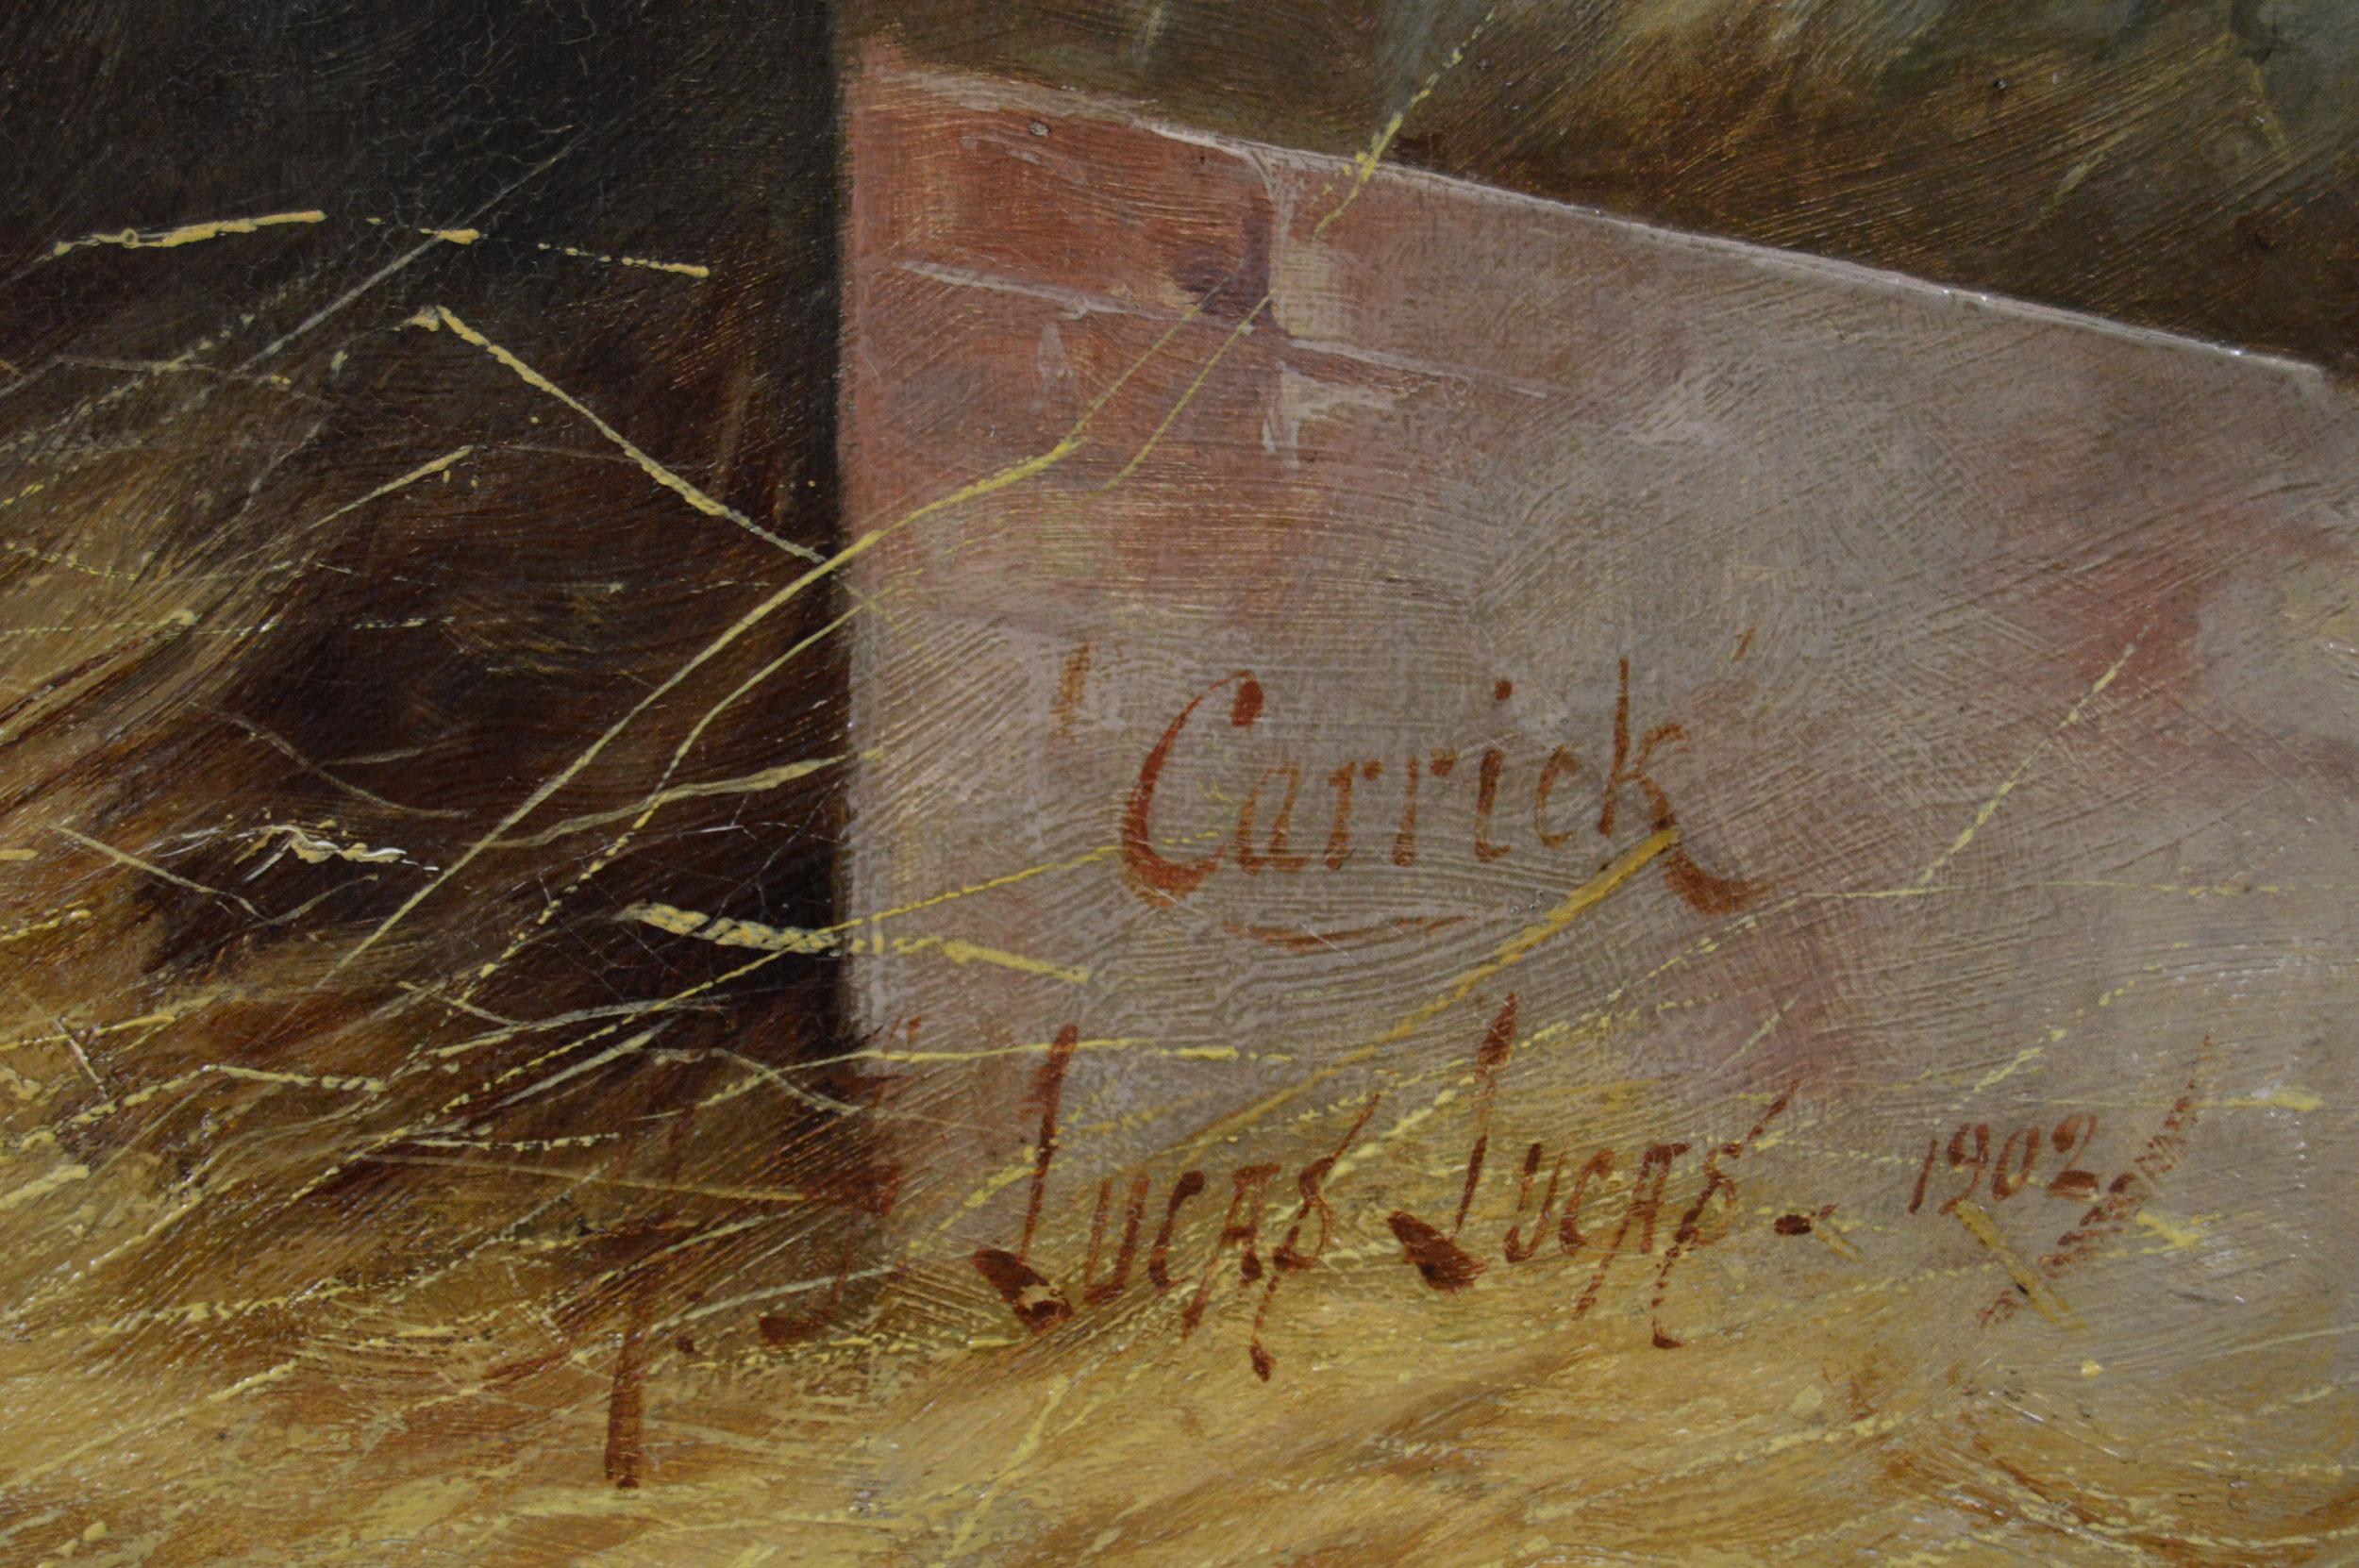 Henry Frederick Lucas Lucas 
Britannique, (1848 1943)
Carrick
Huile sur toile, signée et datée 1902, avec une autre inscription au verso.
Taille de l'image : 19,5 pouces x 25,5 pouces 
Taille, cadre compris : 26,25 pouces x 32,25 pouces.

Henry